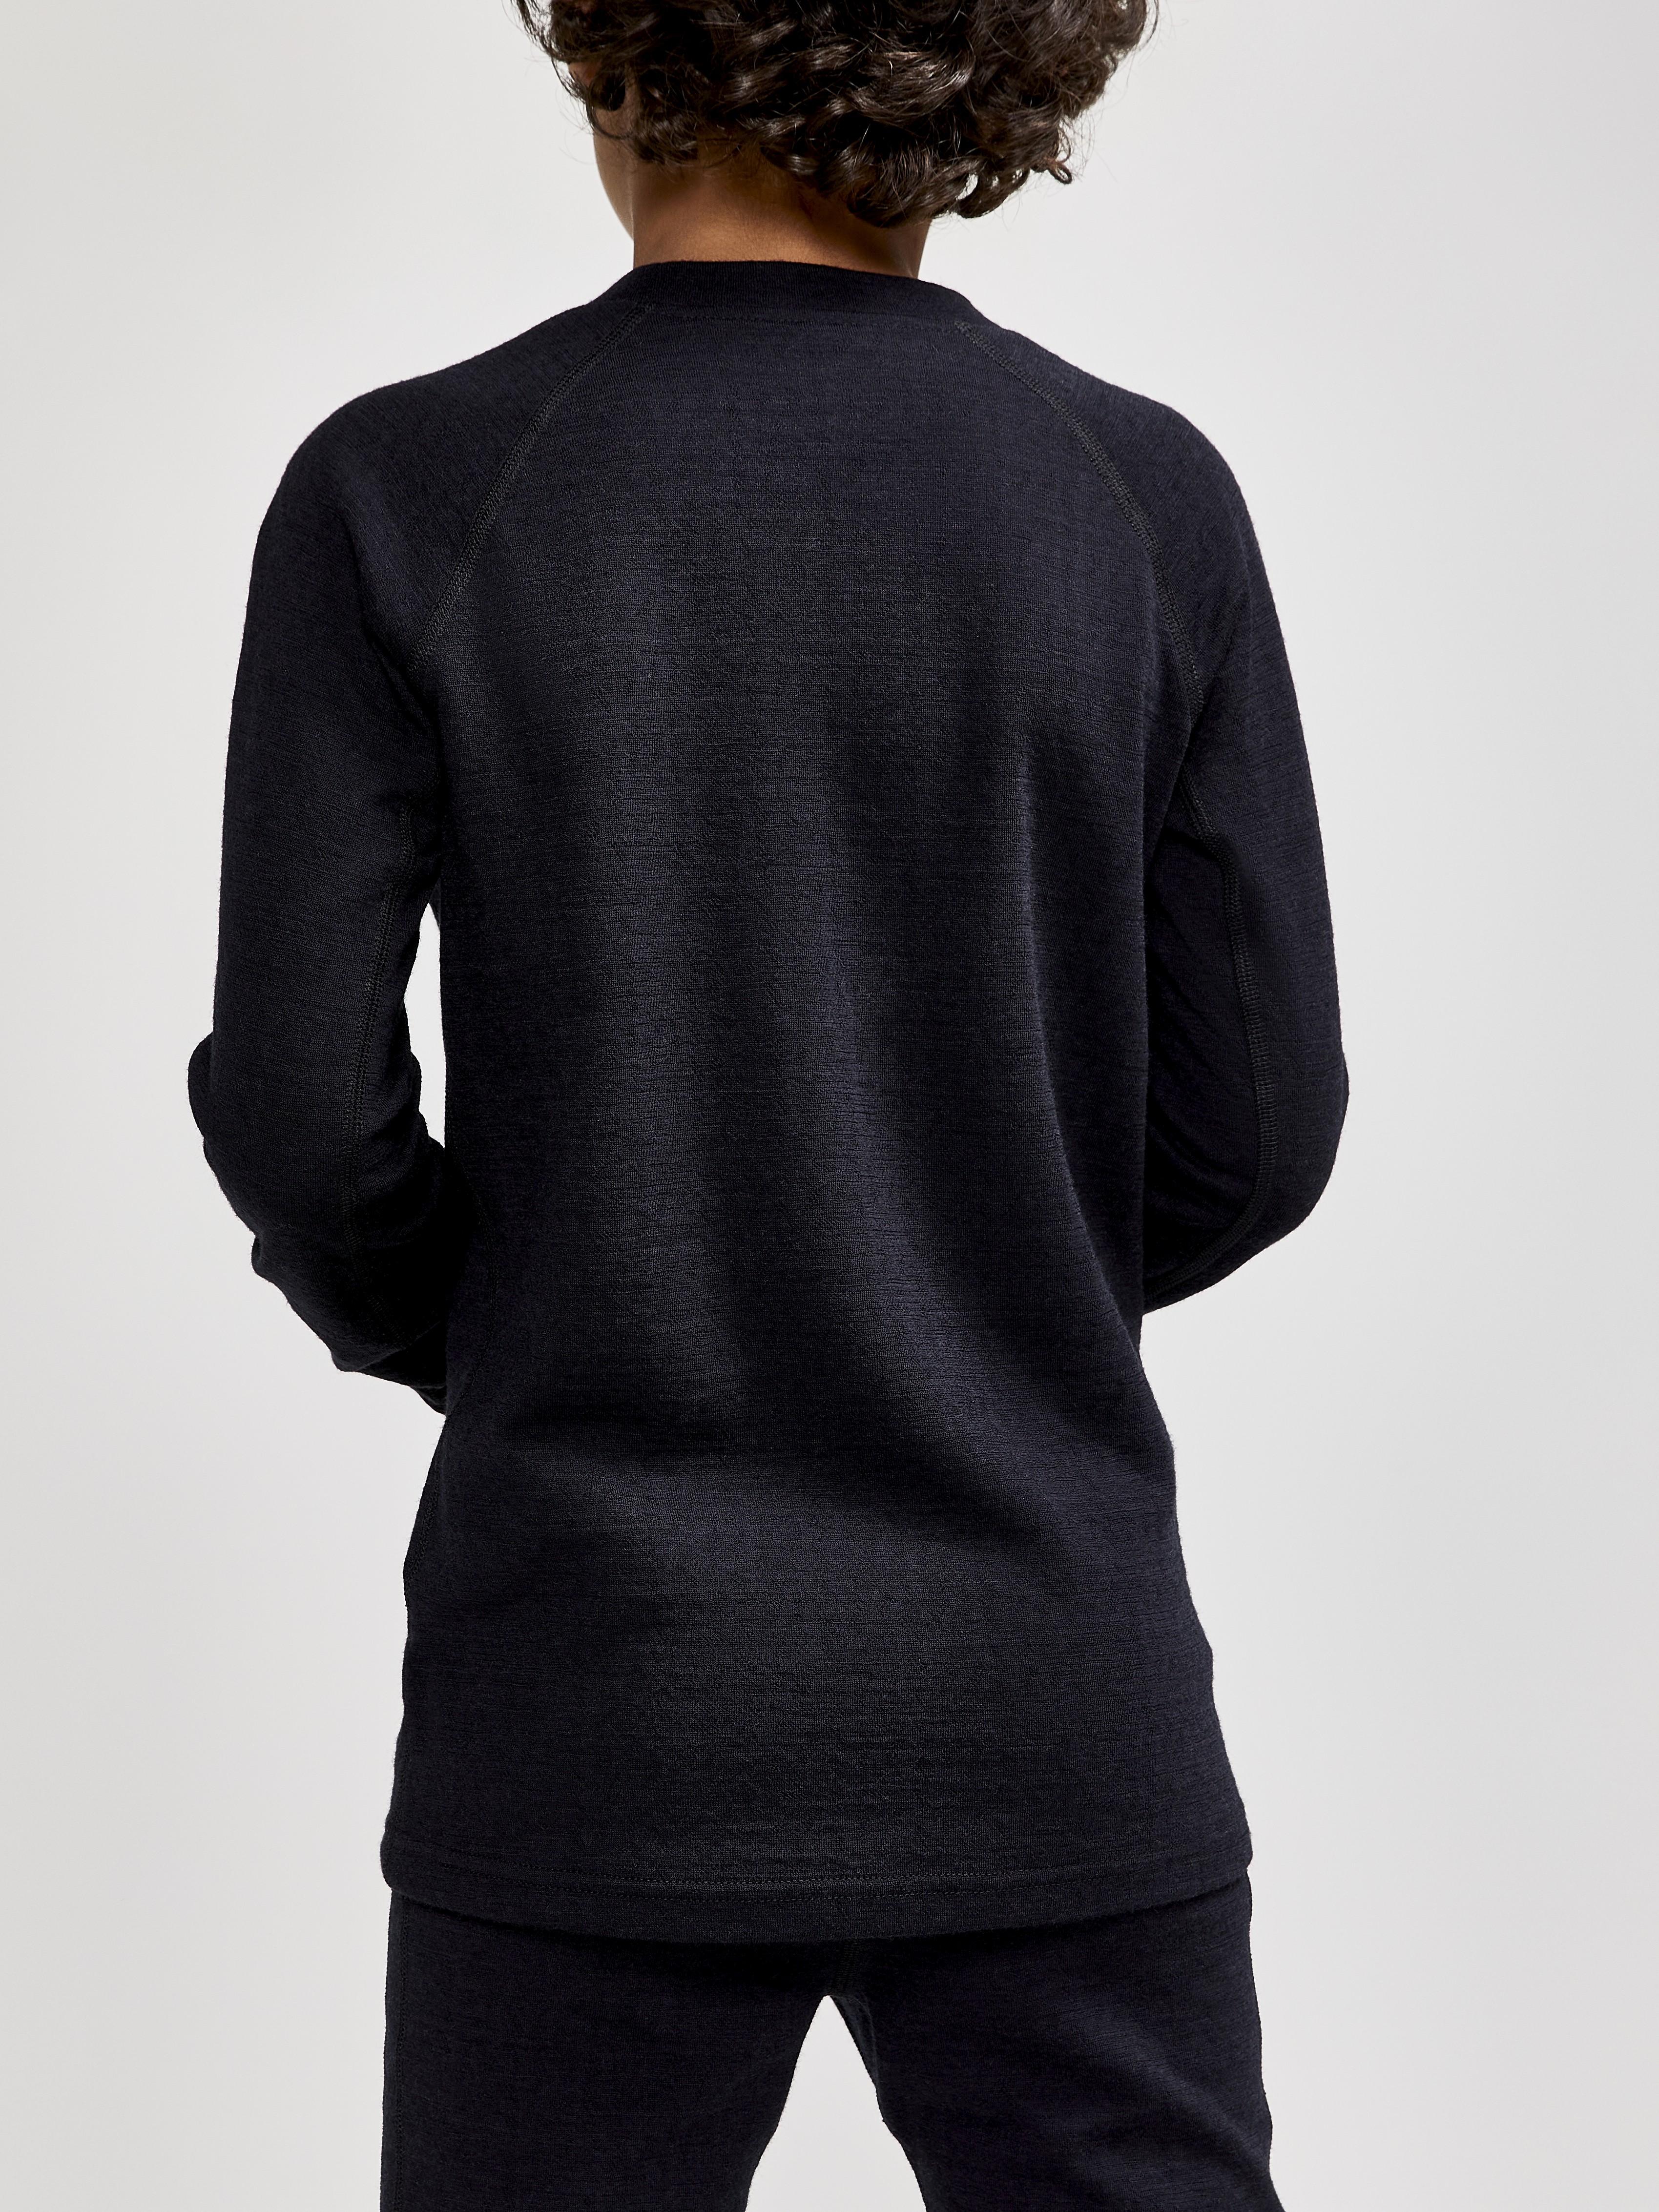 Craft JR Sportswear | ADV Wool Nordic Black LS -